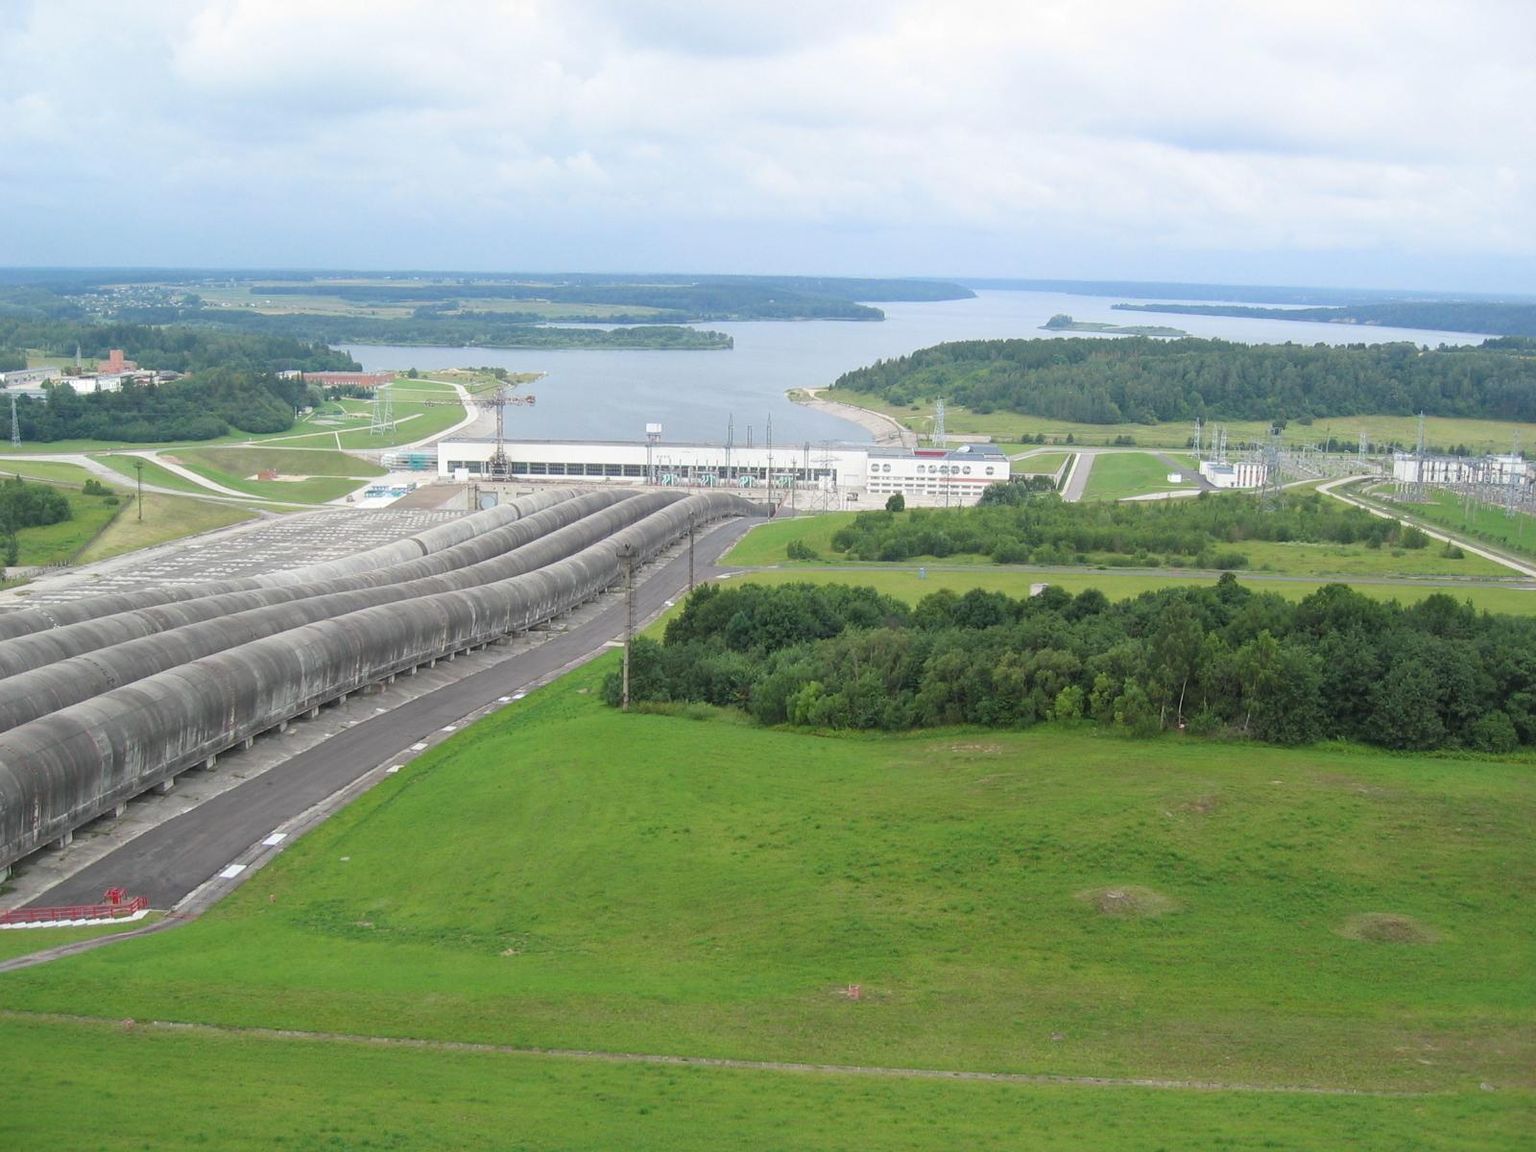 Leedus Kruonises paiknev hüdropumpjaam - 103,5 meetrise kõrguste vahega opereeriv pumpsalvesti. Ülemises reservuaaris on 48 miljonit kuupmeetrit vett. 1998. aastal valminud energiasalvesti suudab tagada 900 MW elektrivõimsuse 12 tunniks.